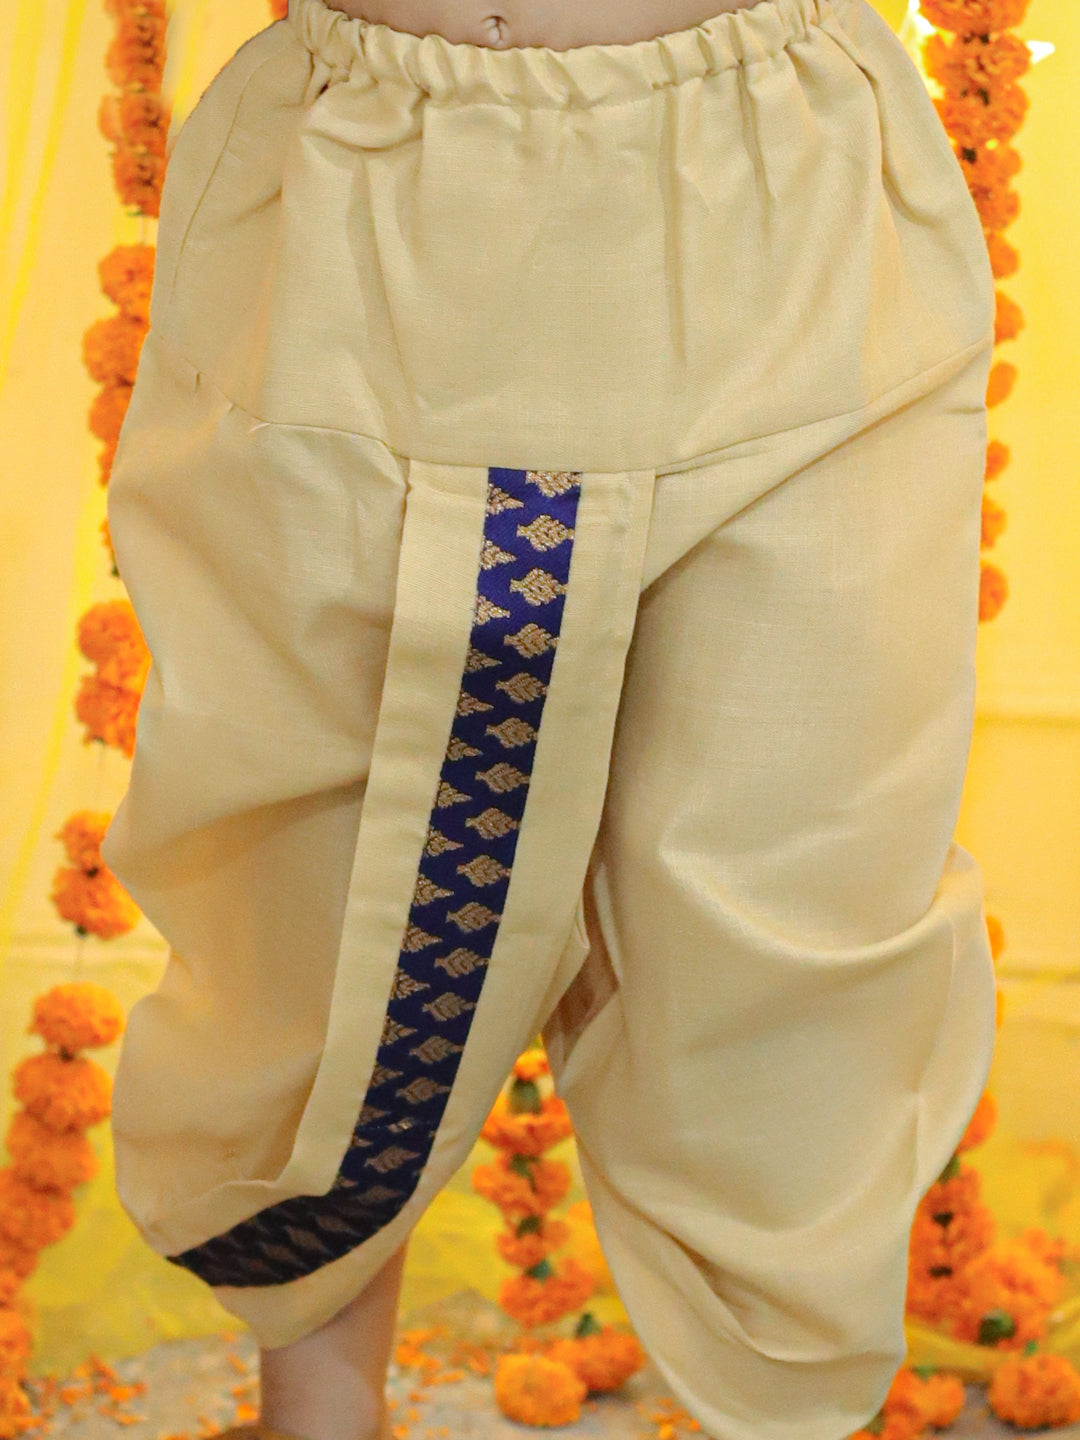 BownBee Boys Ethnic Festive Wear Jacquard Full Sleeve Sherwani with Dhoti - Blue